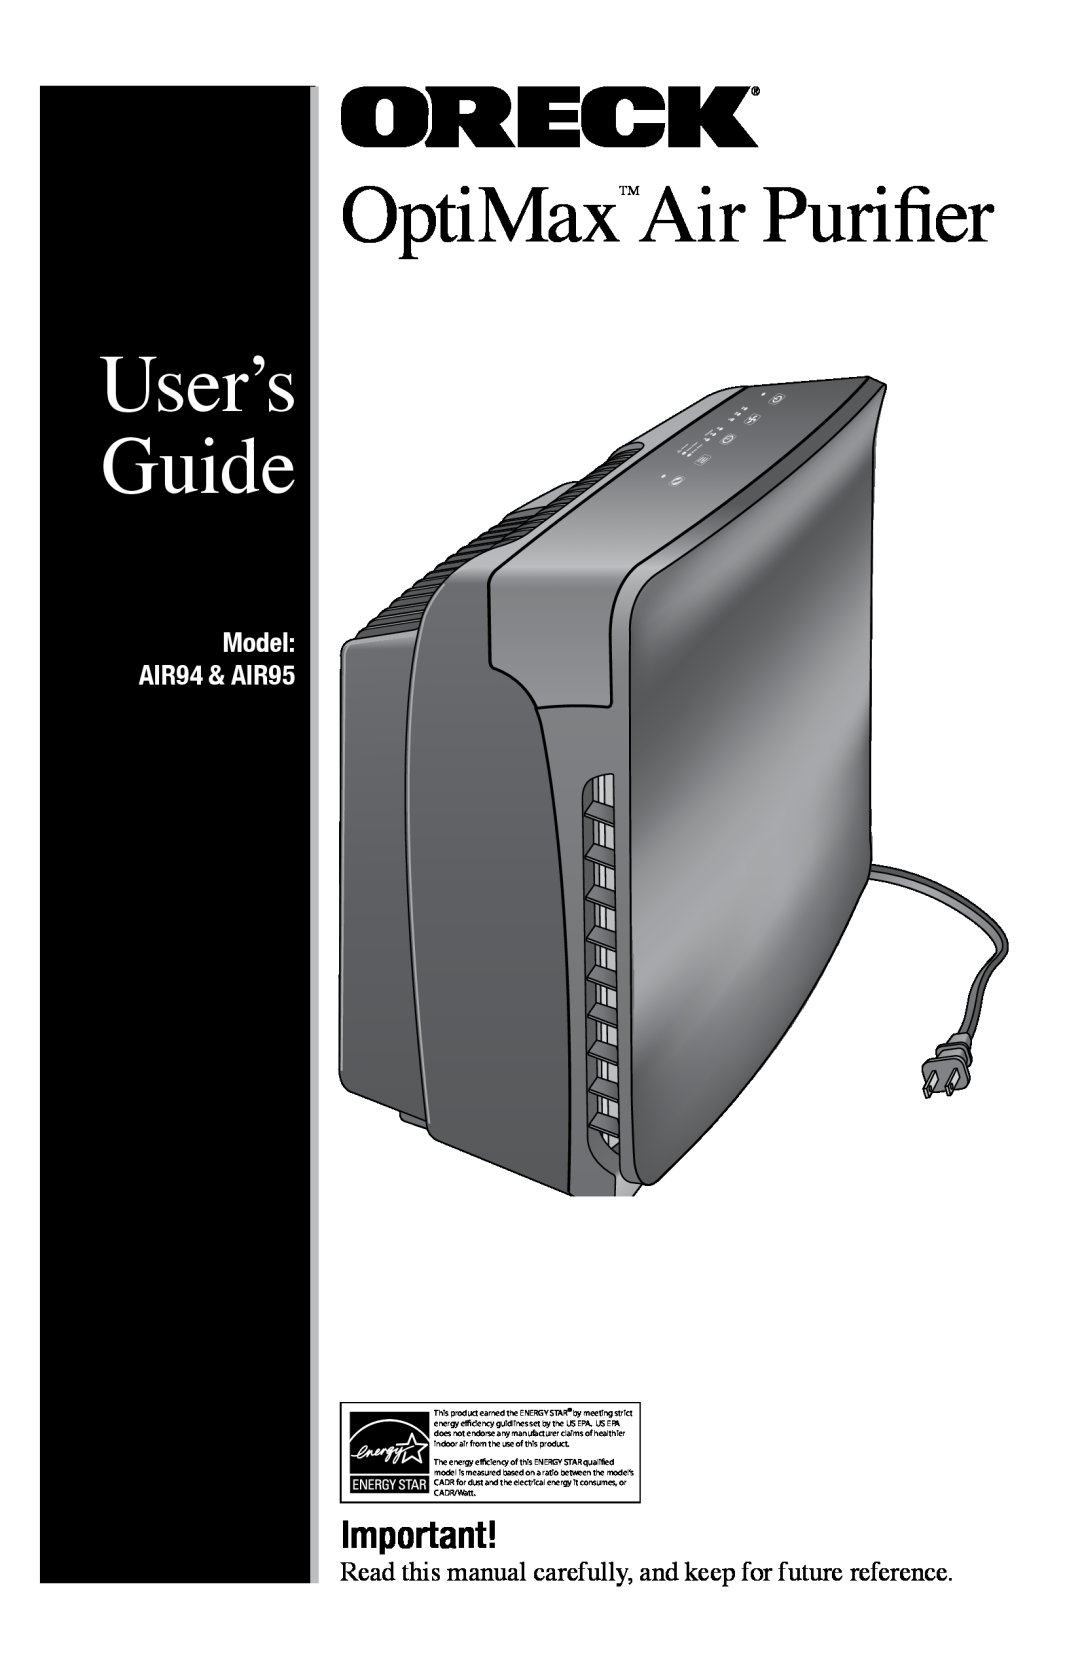 Oreck manual OptiMaxTMAir Purifier, User’s Guide, Model AIR94 & AIR95 